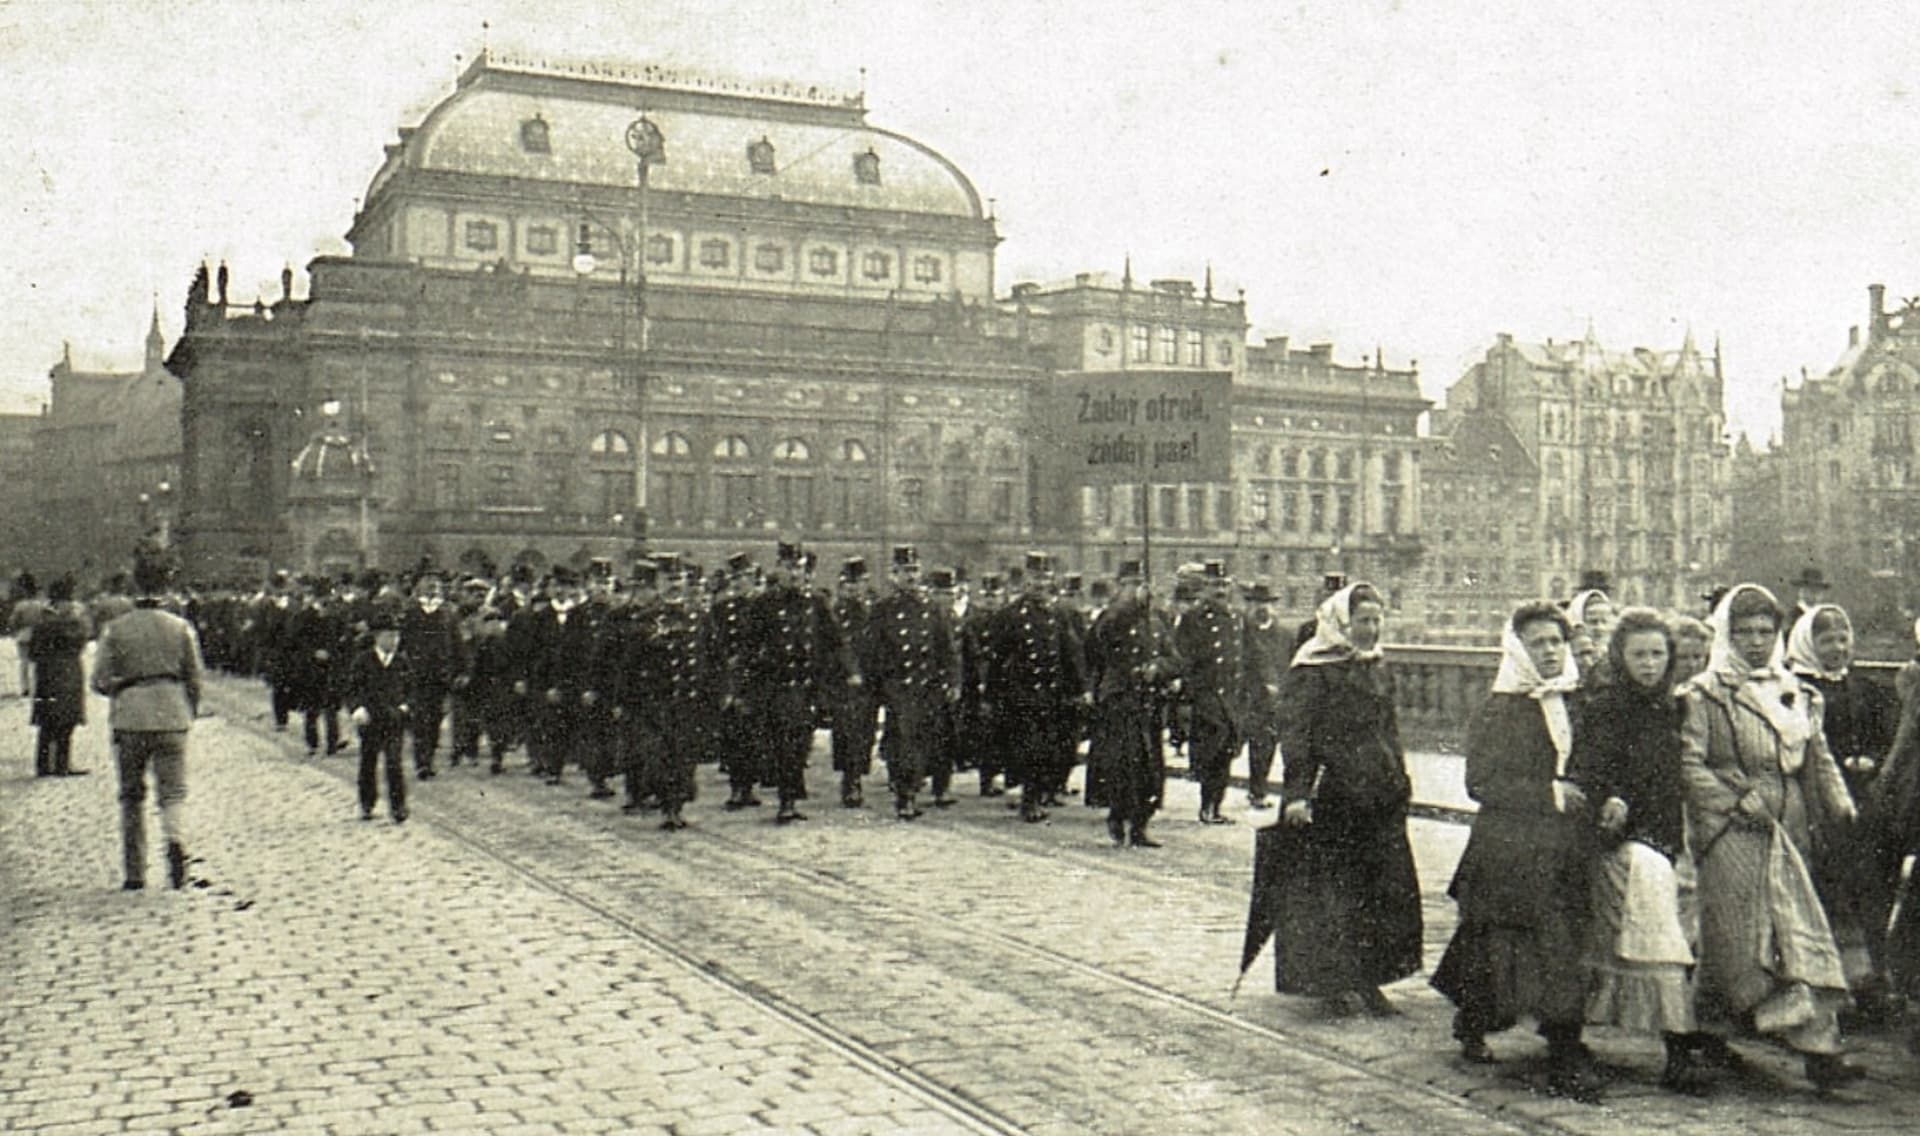 Oslavy Svátku práce v Praze roku 1910, v reportáži časopisu Světozor. Snímek z prvních oslav v roce 1890 není znám.